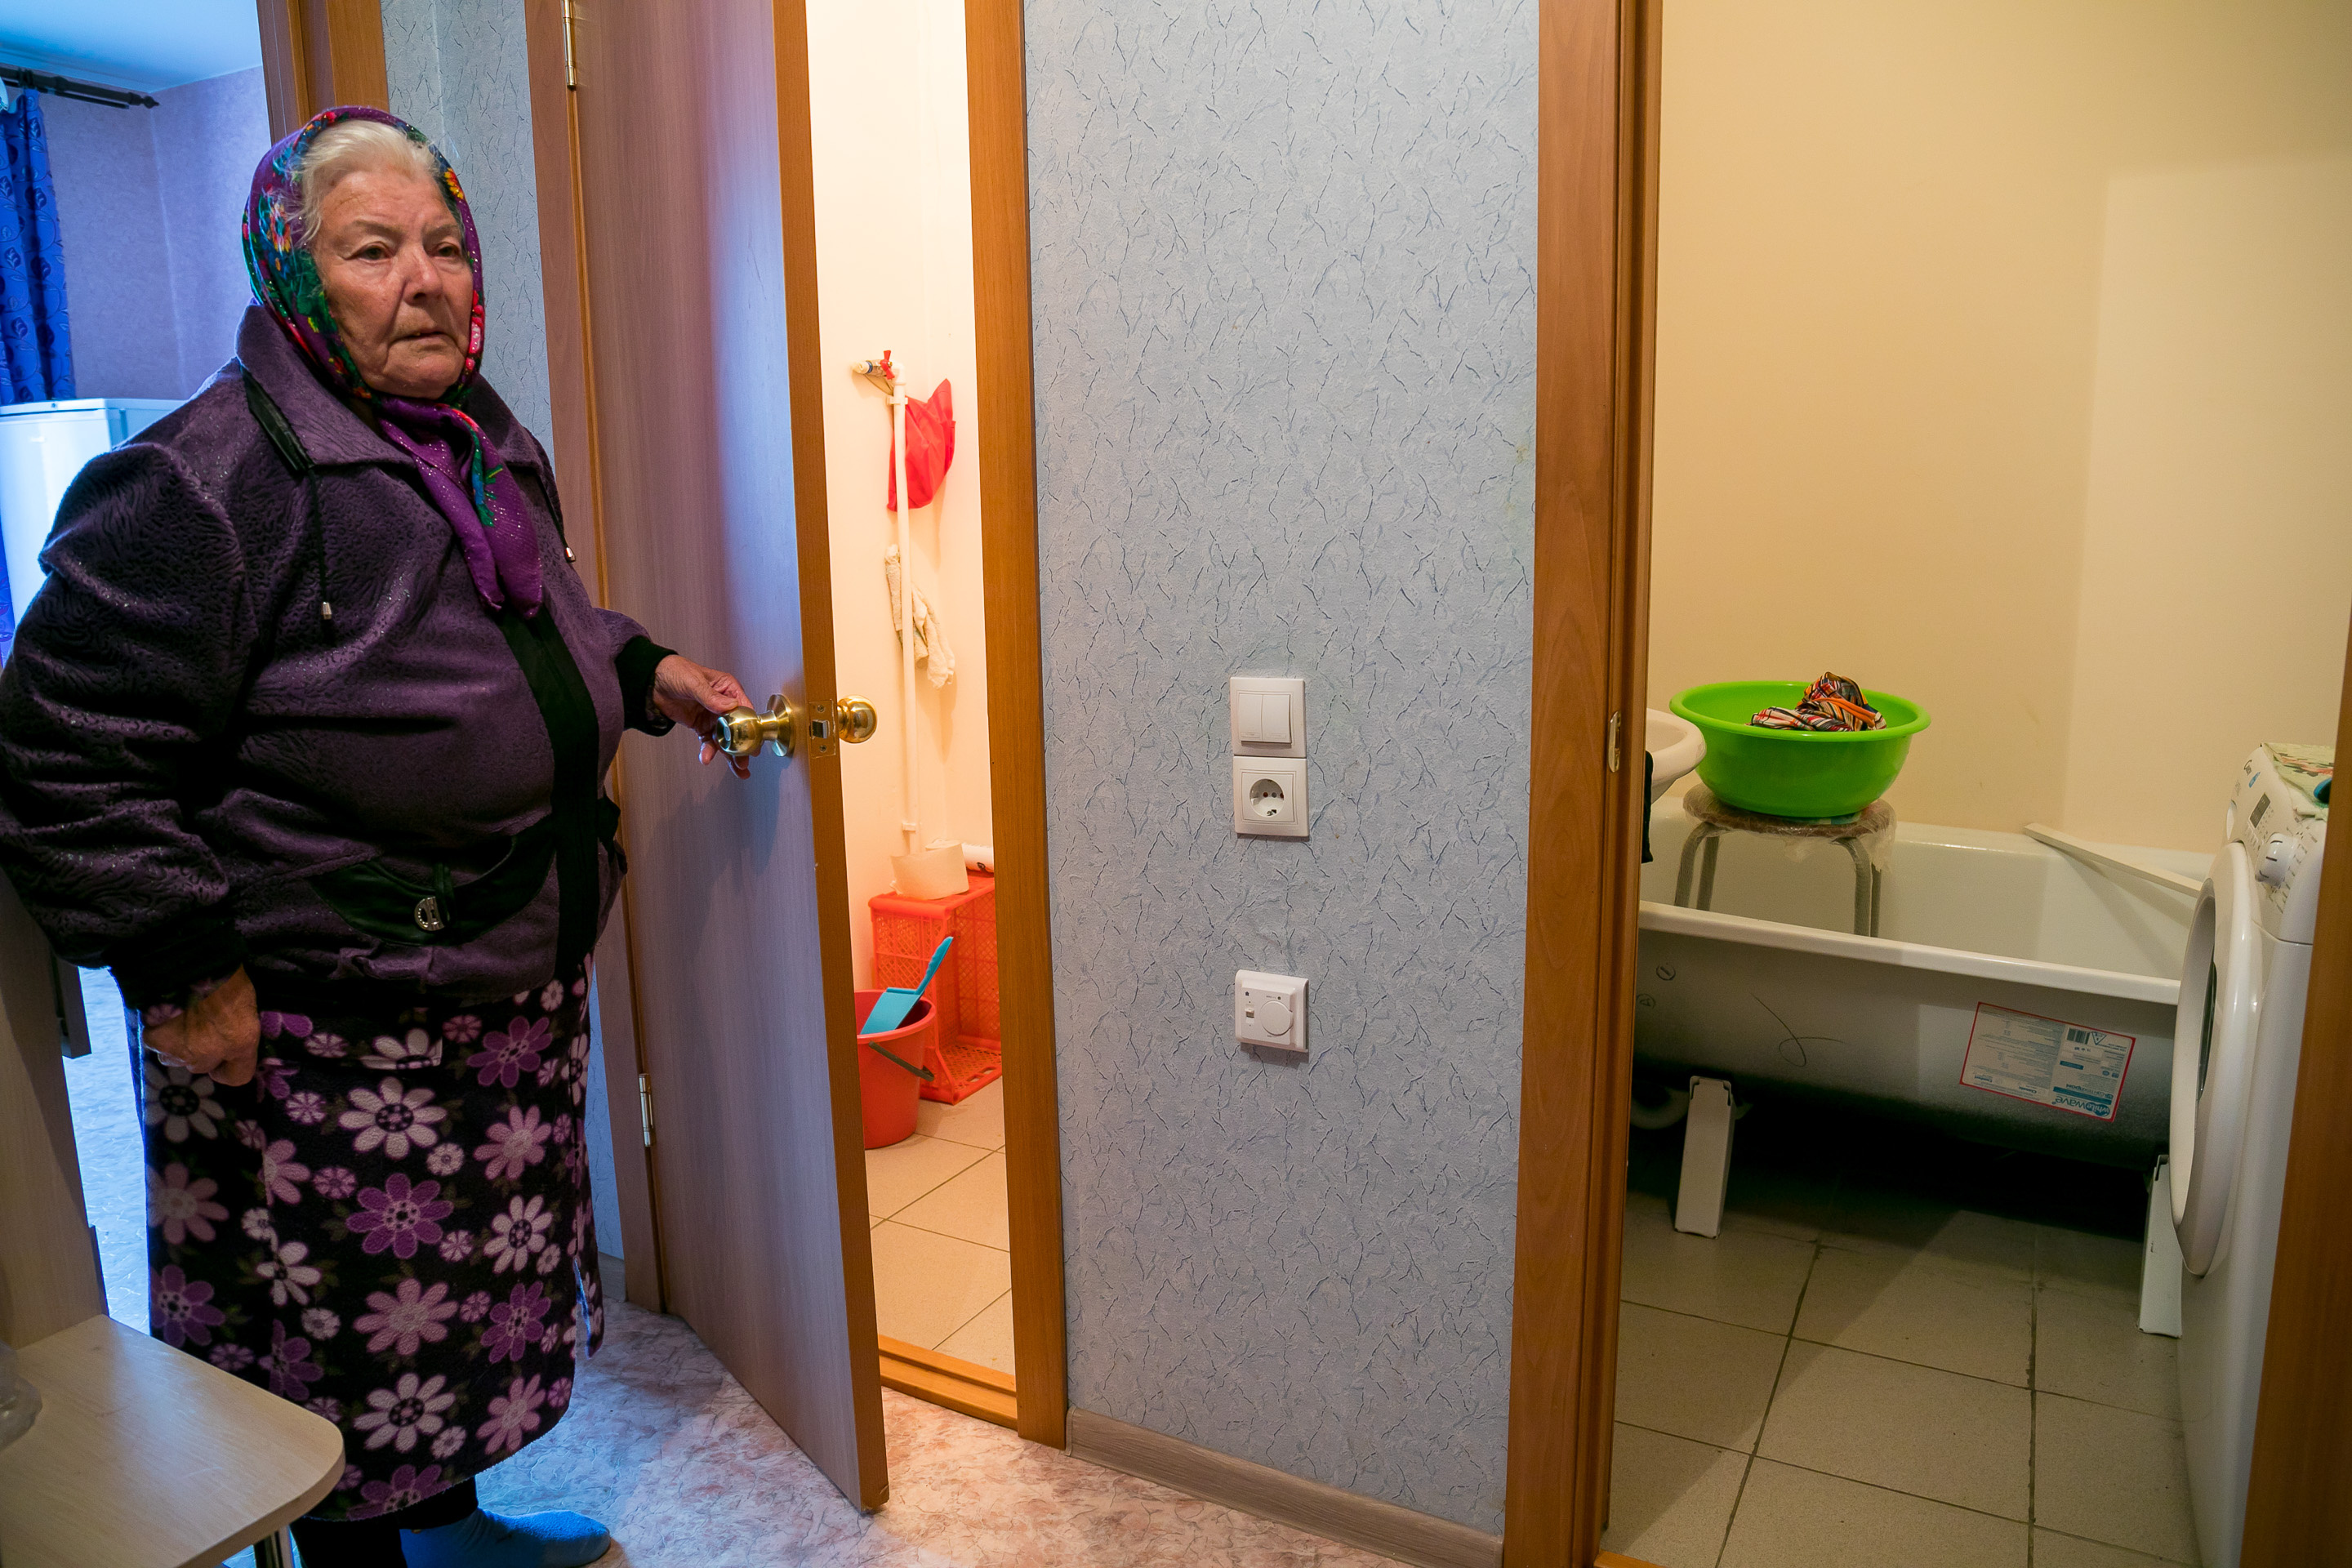 Татьяна Виновьевна живет одна в однокомнатной квартире. Во время приезда она просила телефон горячей линии с президентом — хотела рассказать о вопросе с выселением